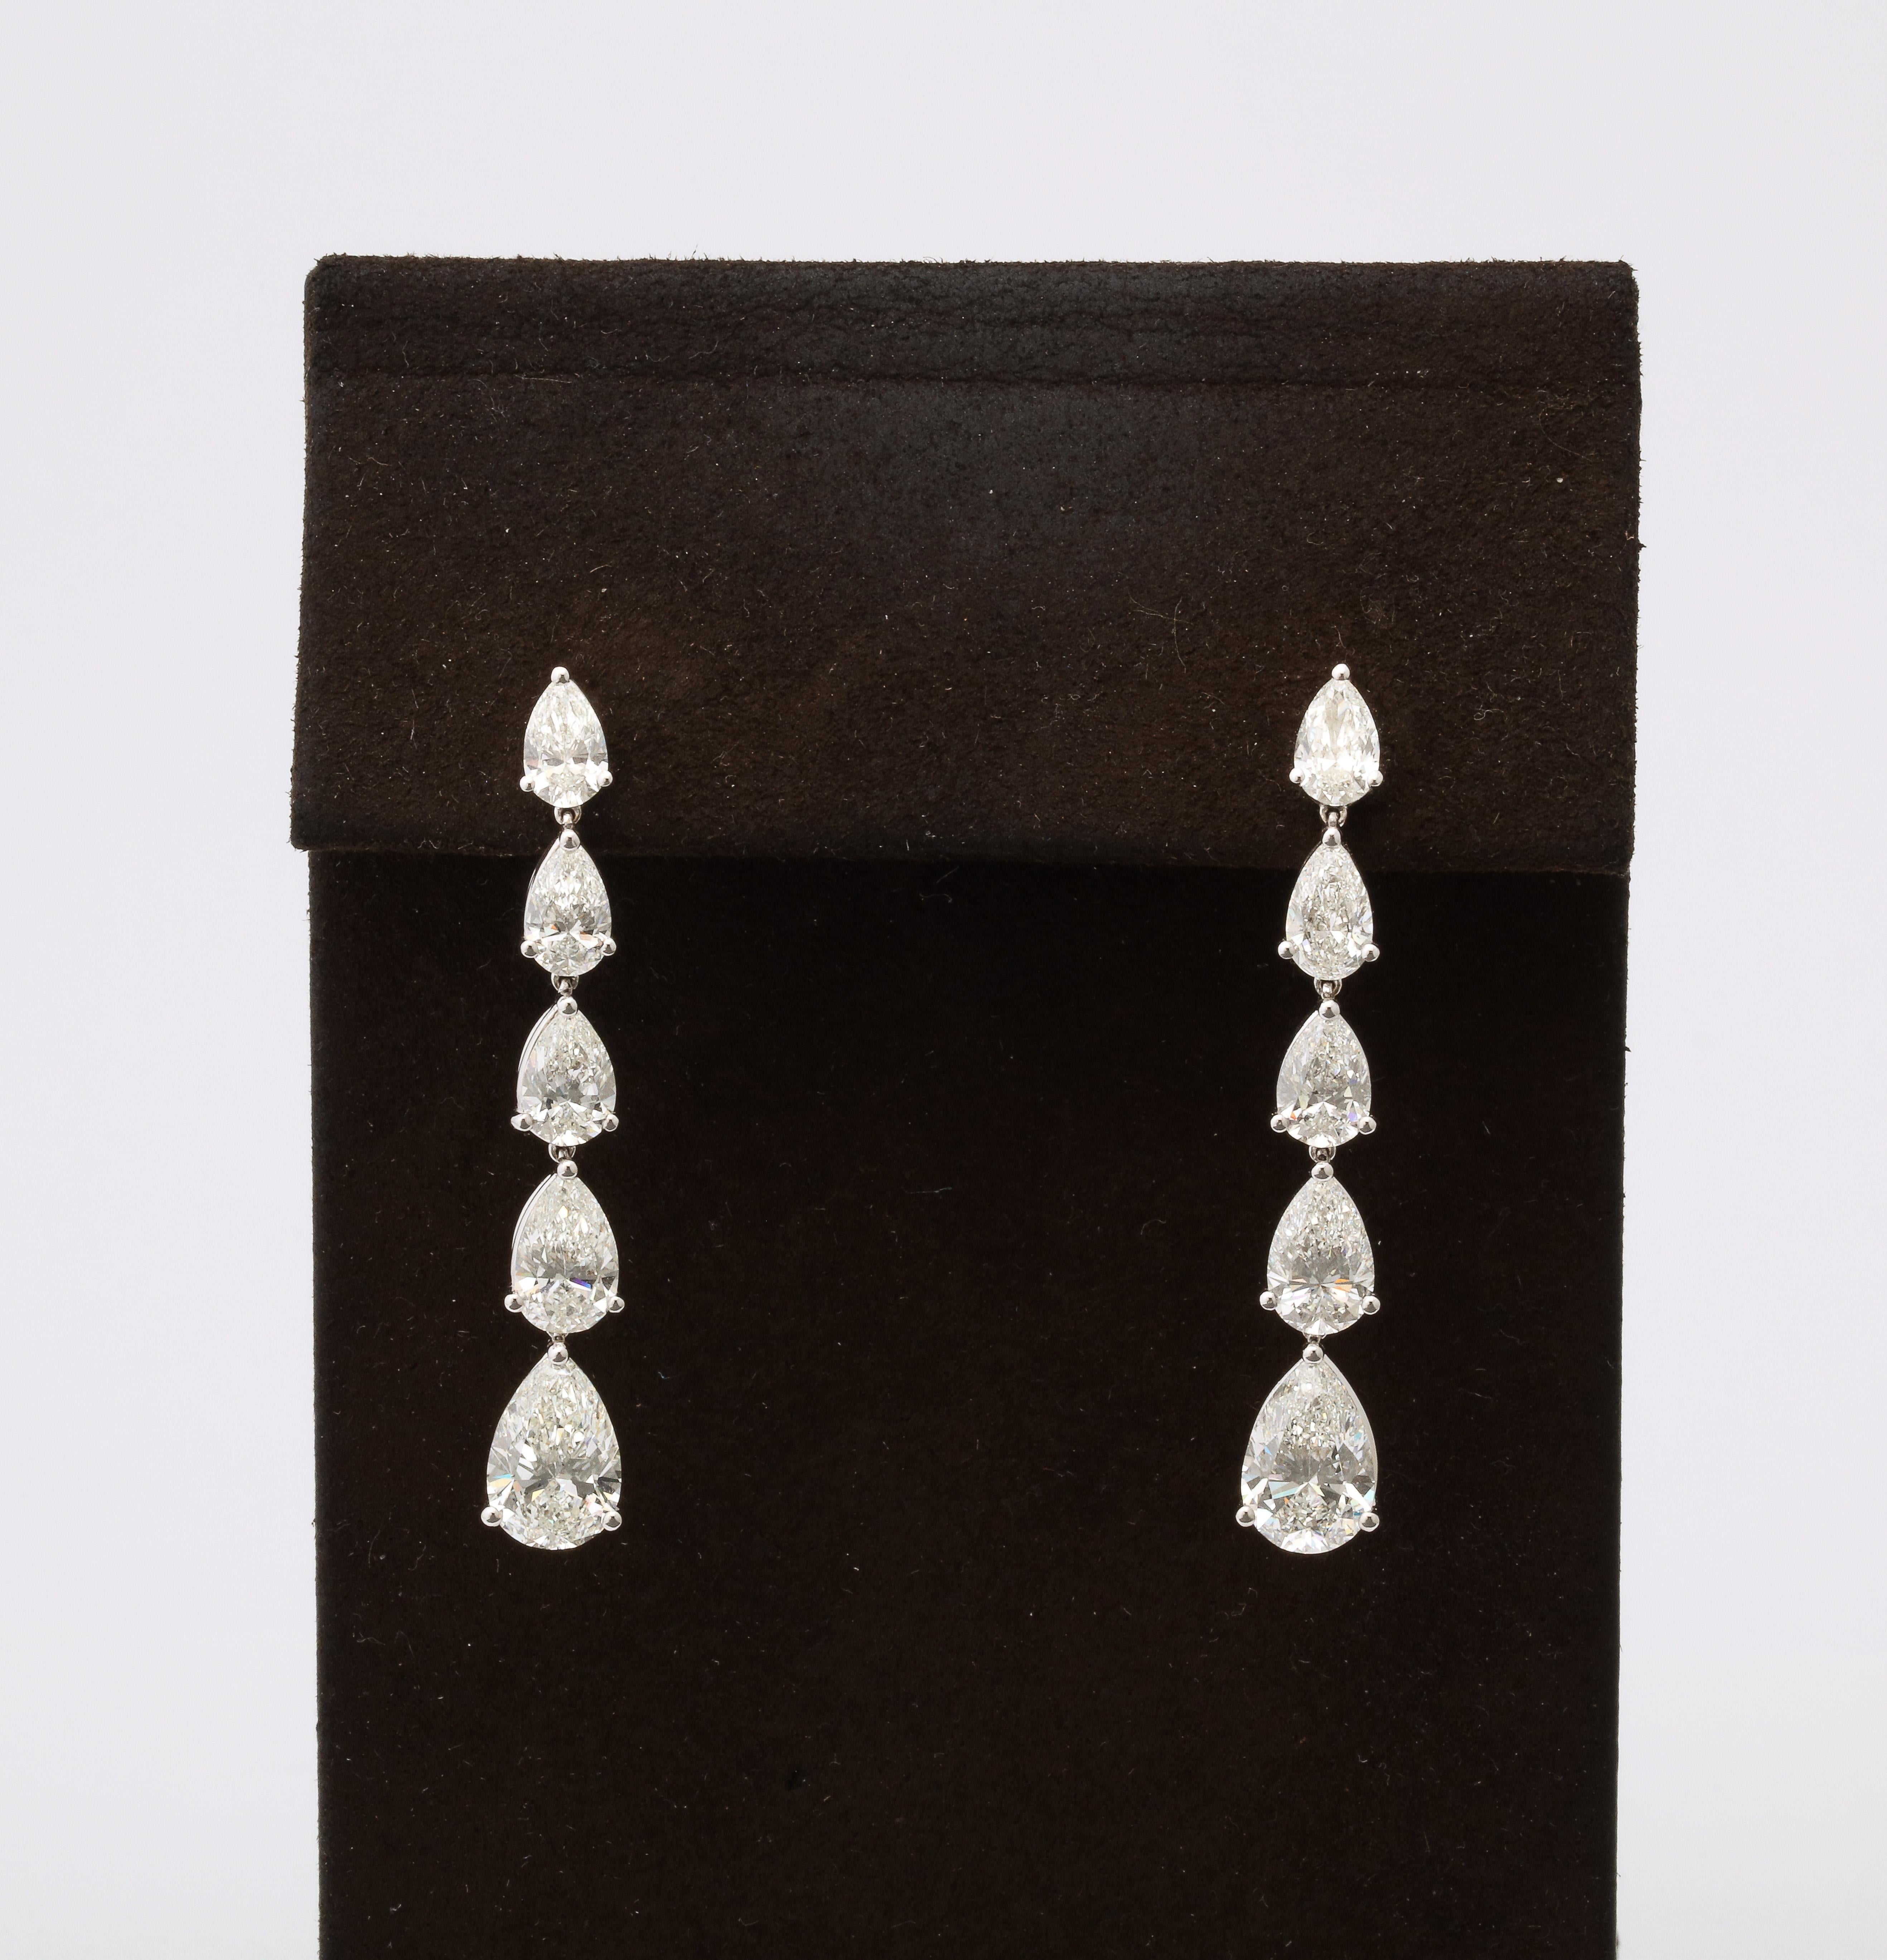 
Ein fabelhafter Ohrring in einem zeitlosen Design! 

9,51 Gesamtkarat weißer birnenförmiger Diamanten mit je 2 Karat Tropfen.  

18k Weißgold 

Ungefähr 1.80 Zoll lang. 

Der perfekte Ohrring für die eigene Sammlung. 